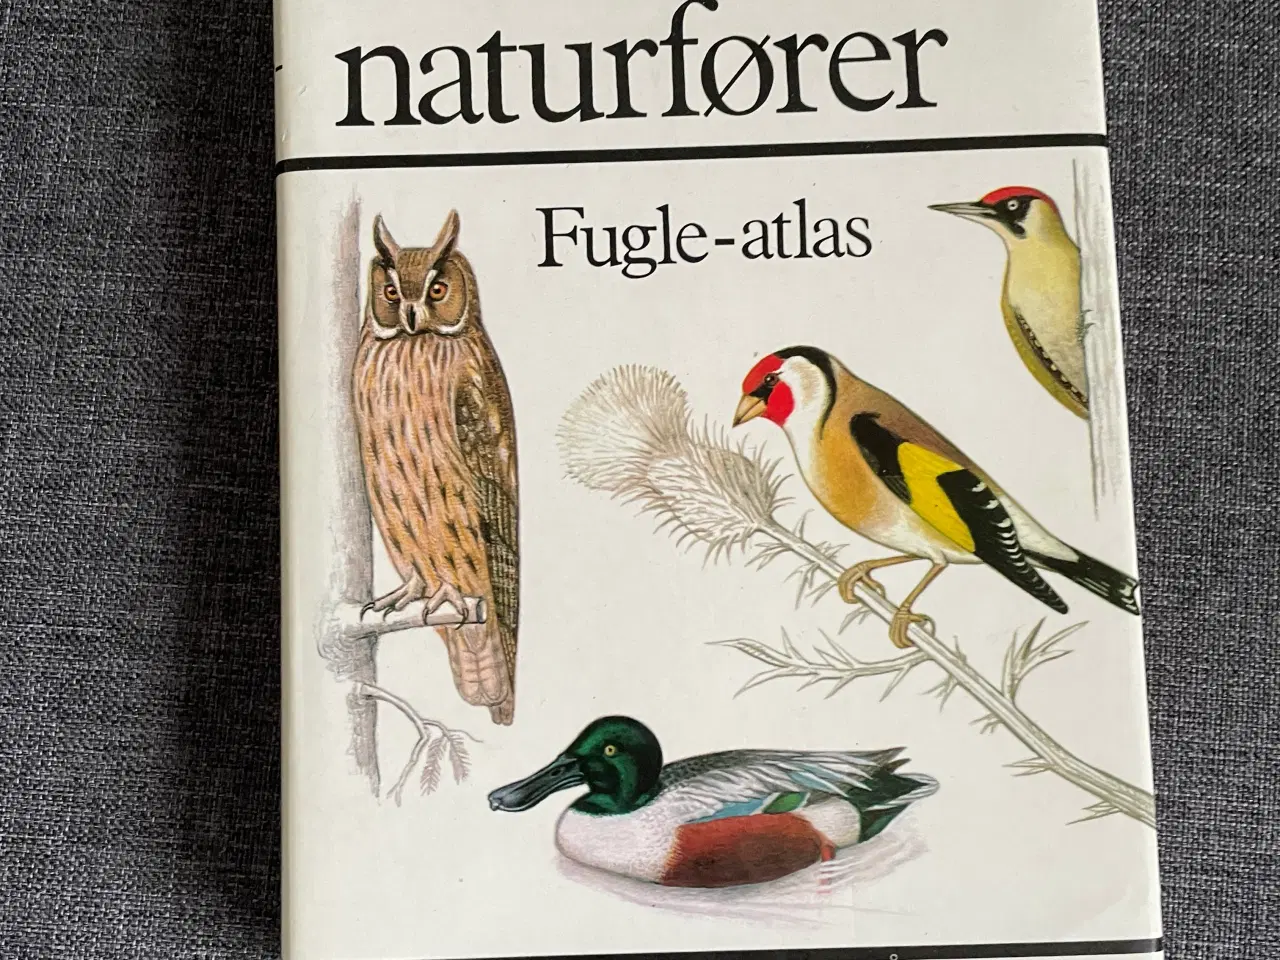 Billede 1 - Fugle -atlas , Lademanns naturfører